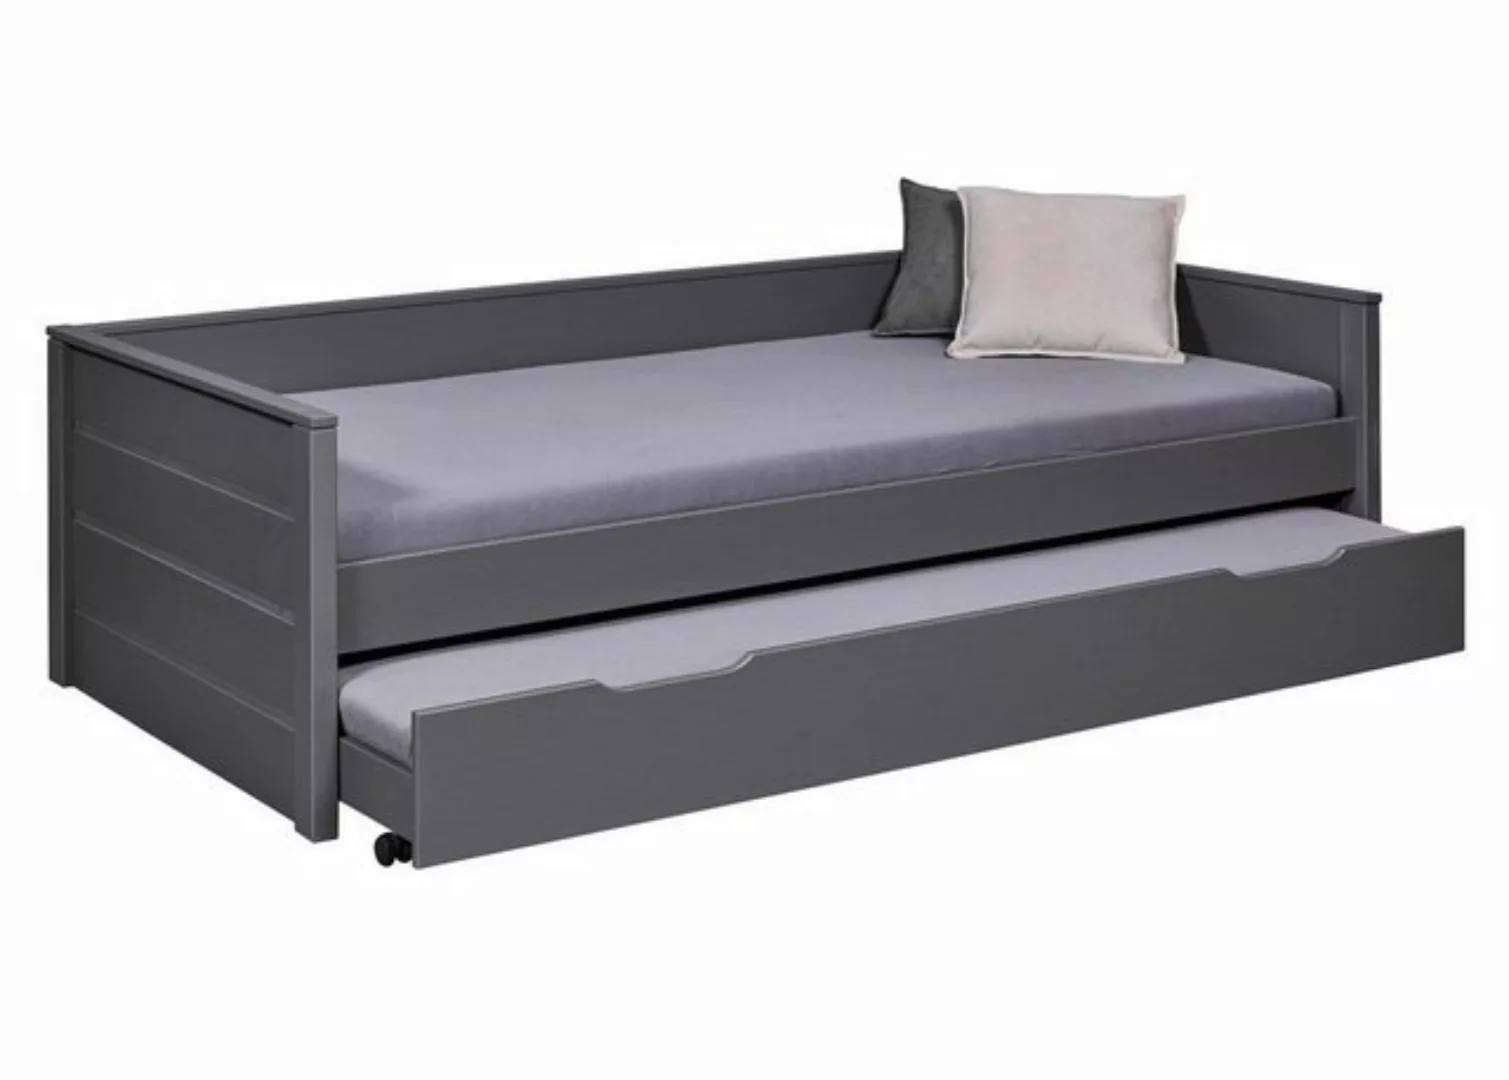 ebuy24 Bett Dream Bett 90x200cm mit 1 ausziehbares Bett grau. günstig online kaufen